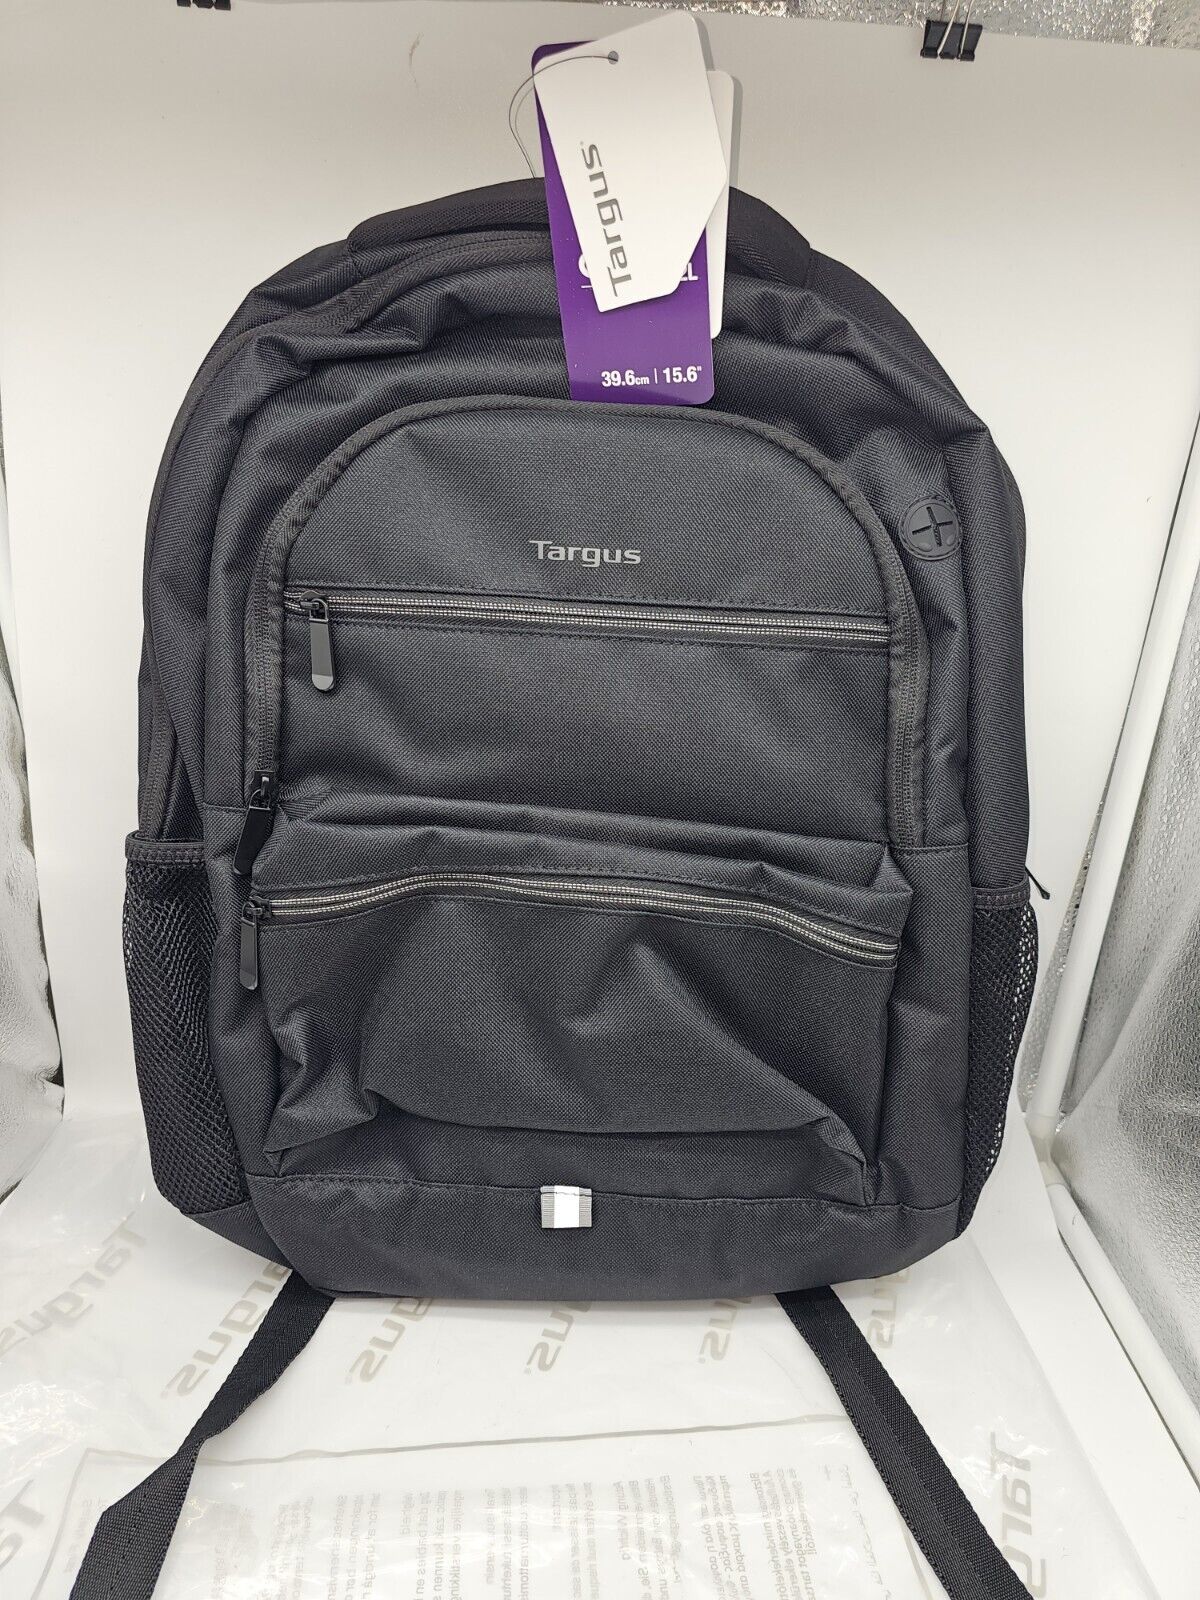 School Or Work - Targus - Octave II Backpack for 15.6 Laptops - Black (Unisex)